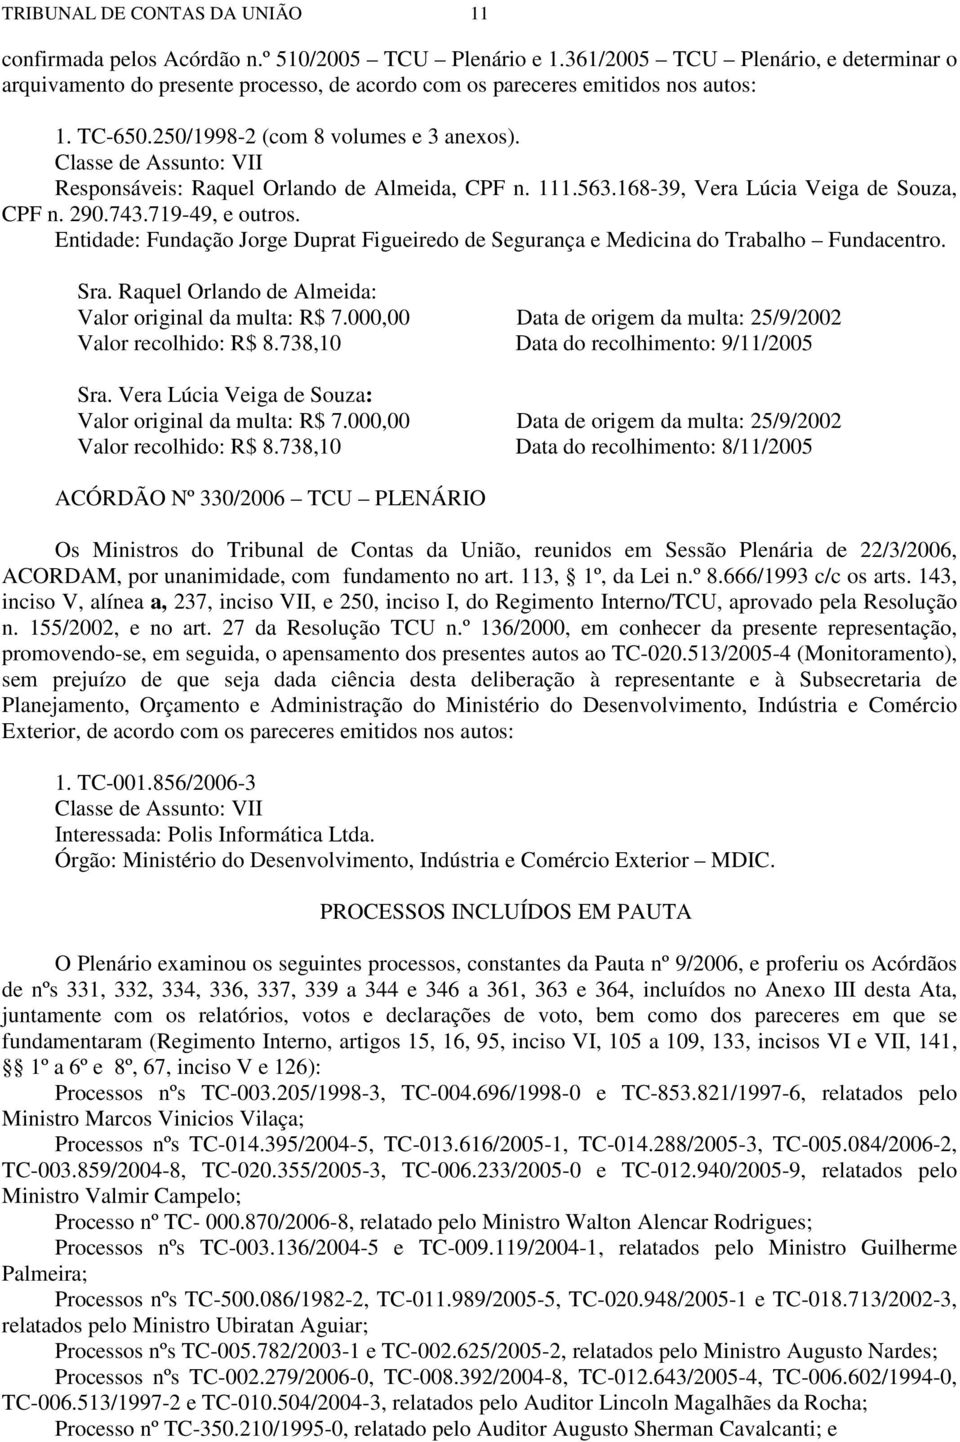 Classe de Assunto: VII Responsáveis: Raquel Orlando de Almeida, CPF n. 111.563.168-39, Vera Lúcia Veiga de Souza, CPF n. 290.743.719-49, e outros.